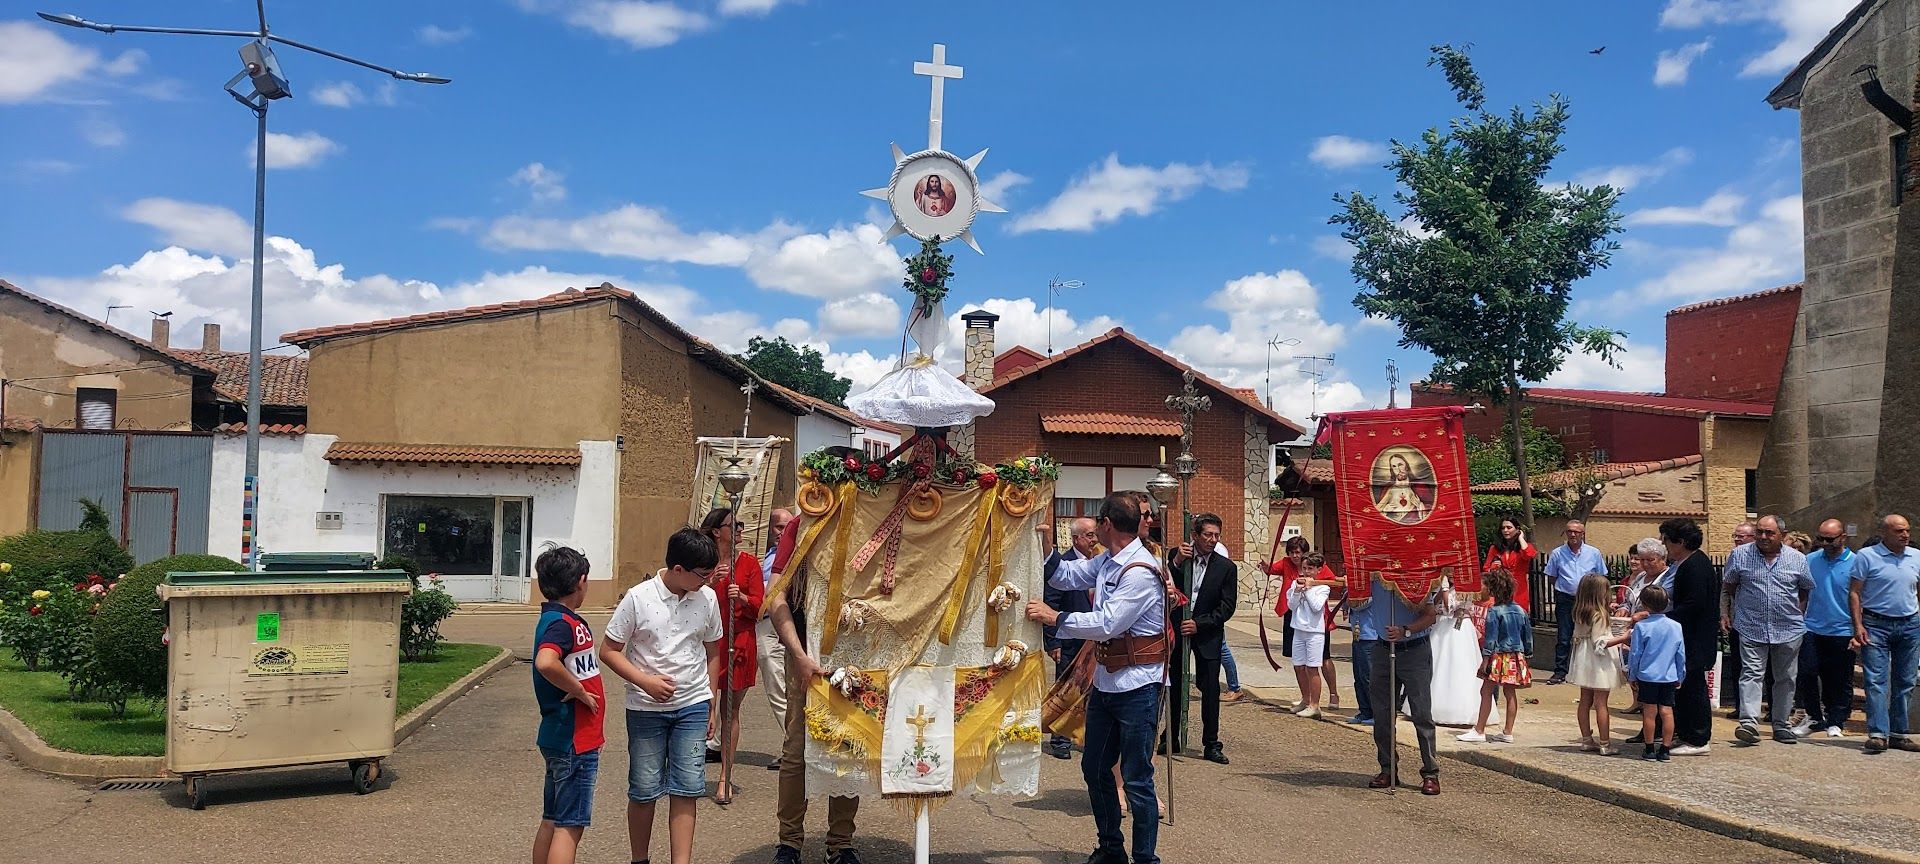 Foto de archivo de la procesión de Corpus Christi en Fresno de la Vega. | L.N.C.